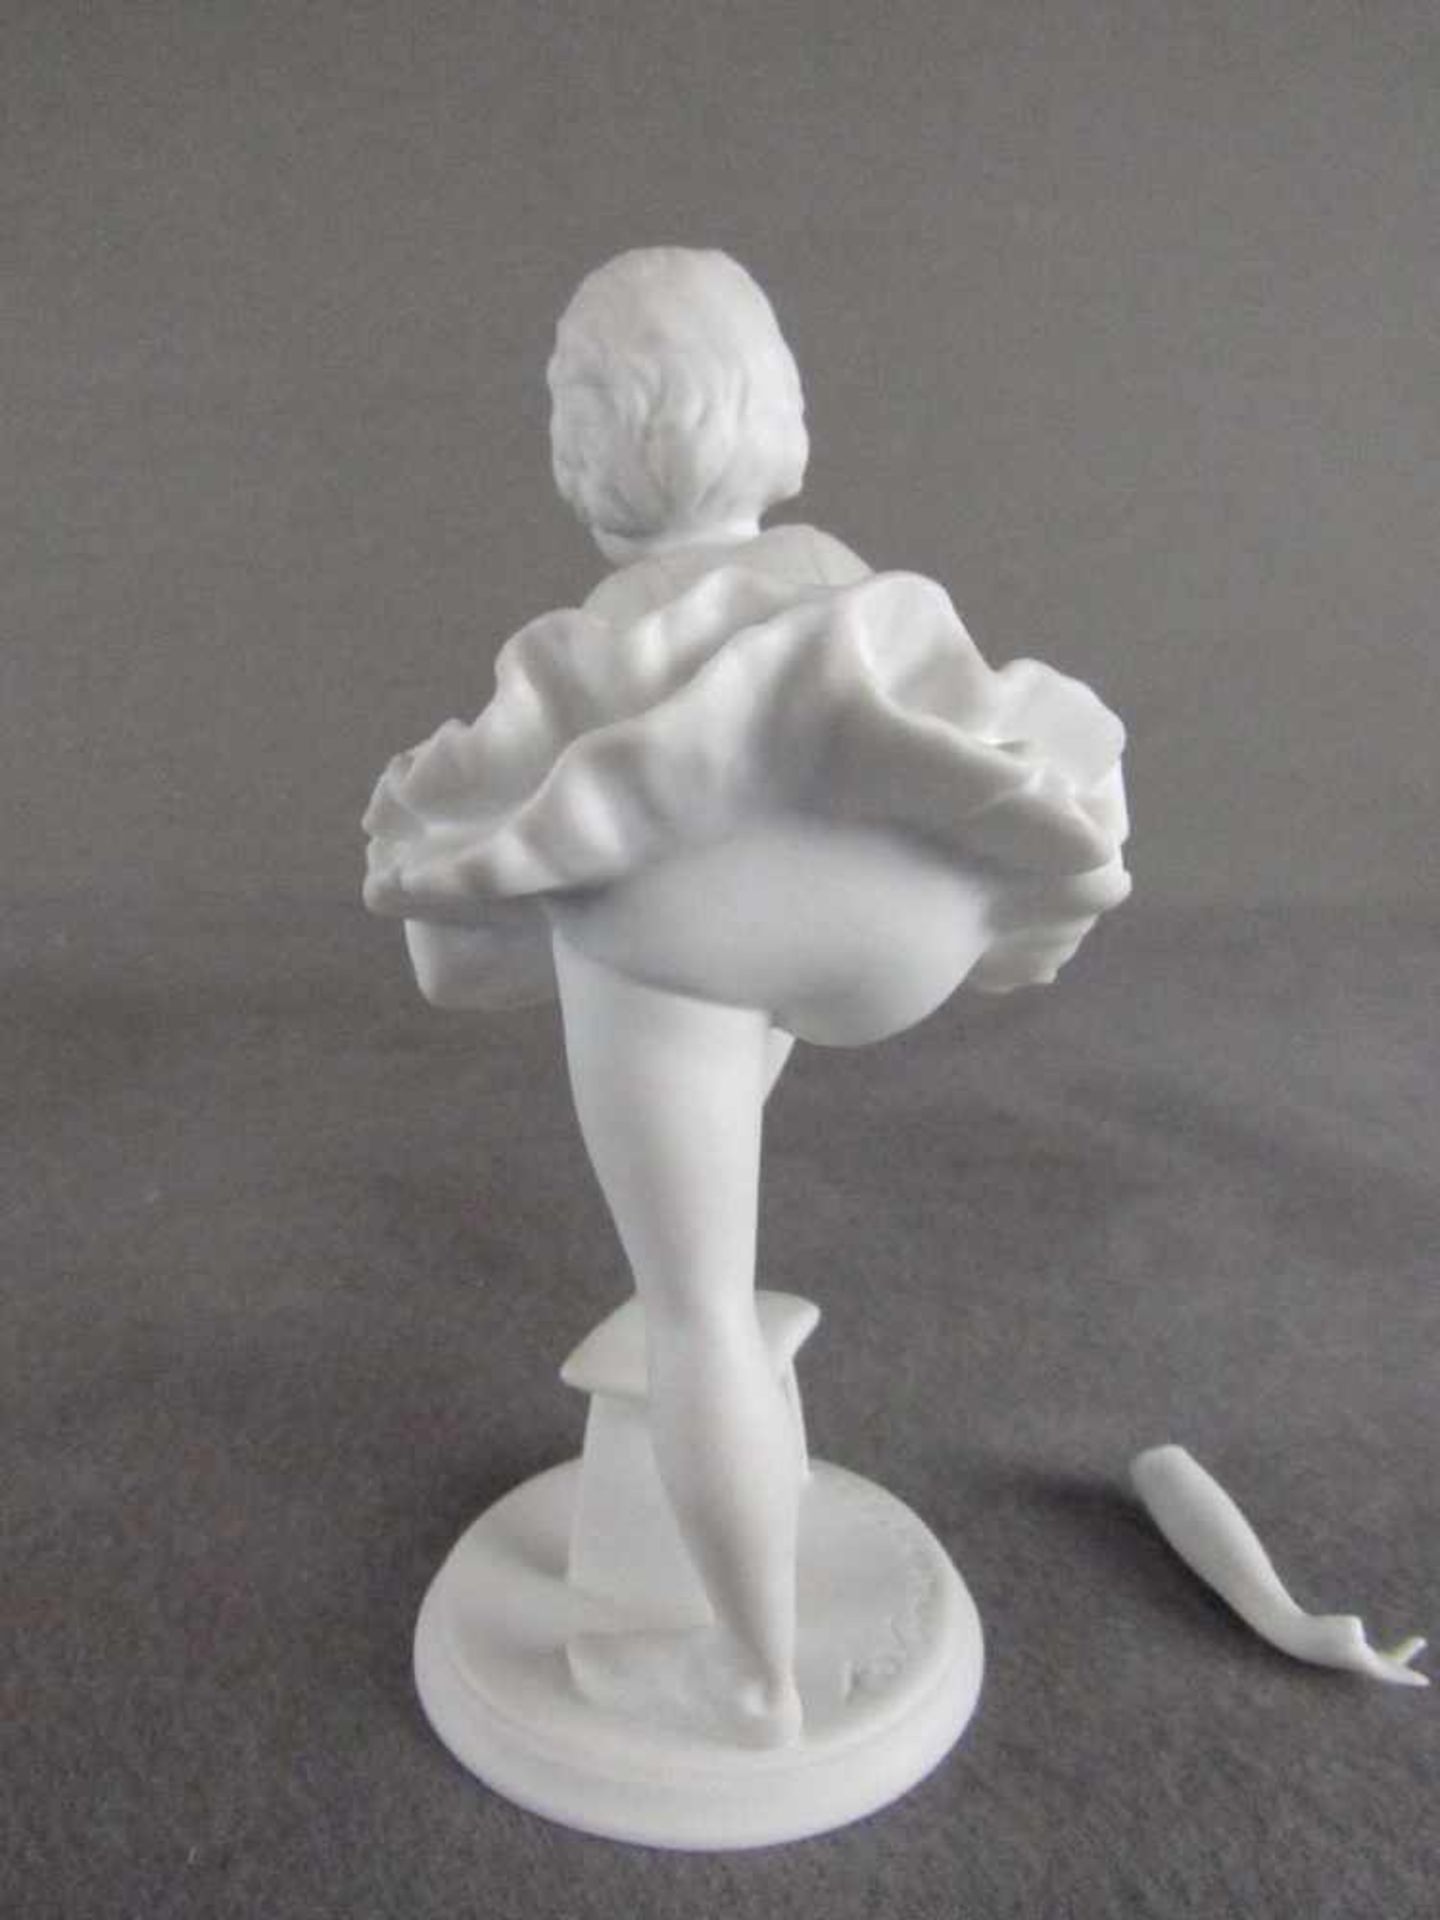 Kleine Figurine Baletttänzerin Bisquit Porzellan Kaiser 15cm hoch Arm gebrochen aber anbei< - Bild 3 aus 6